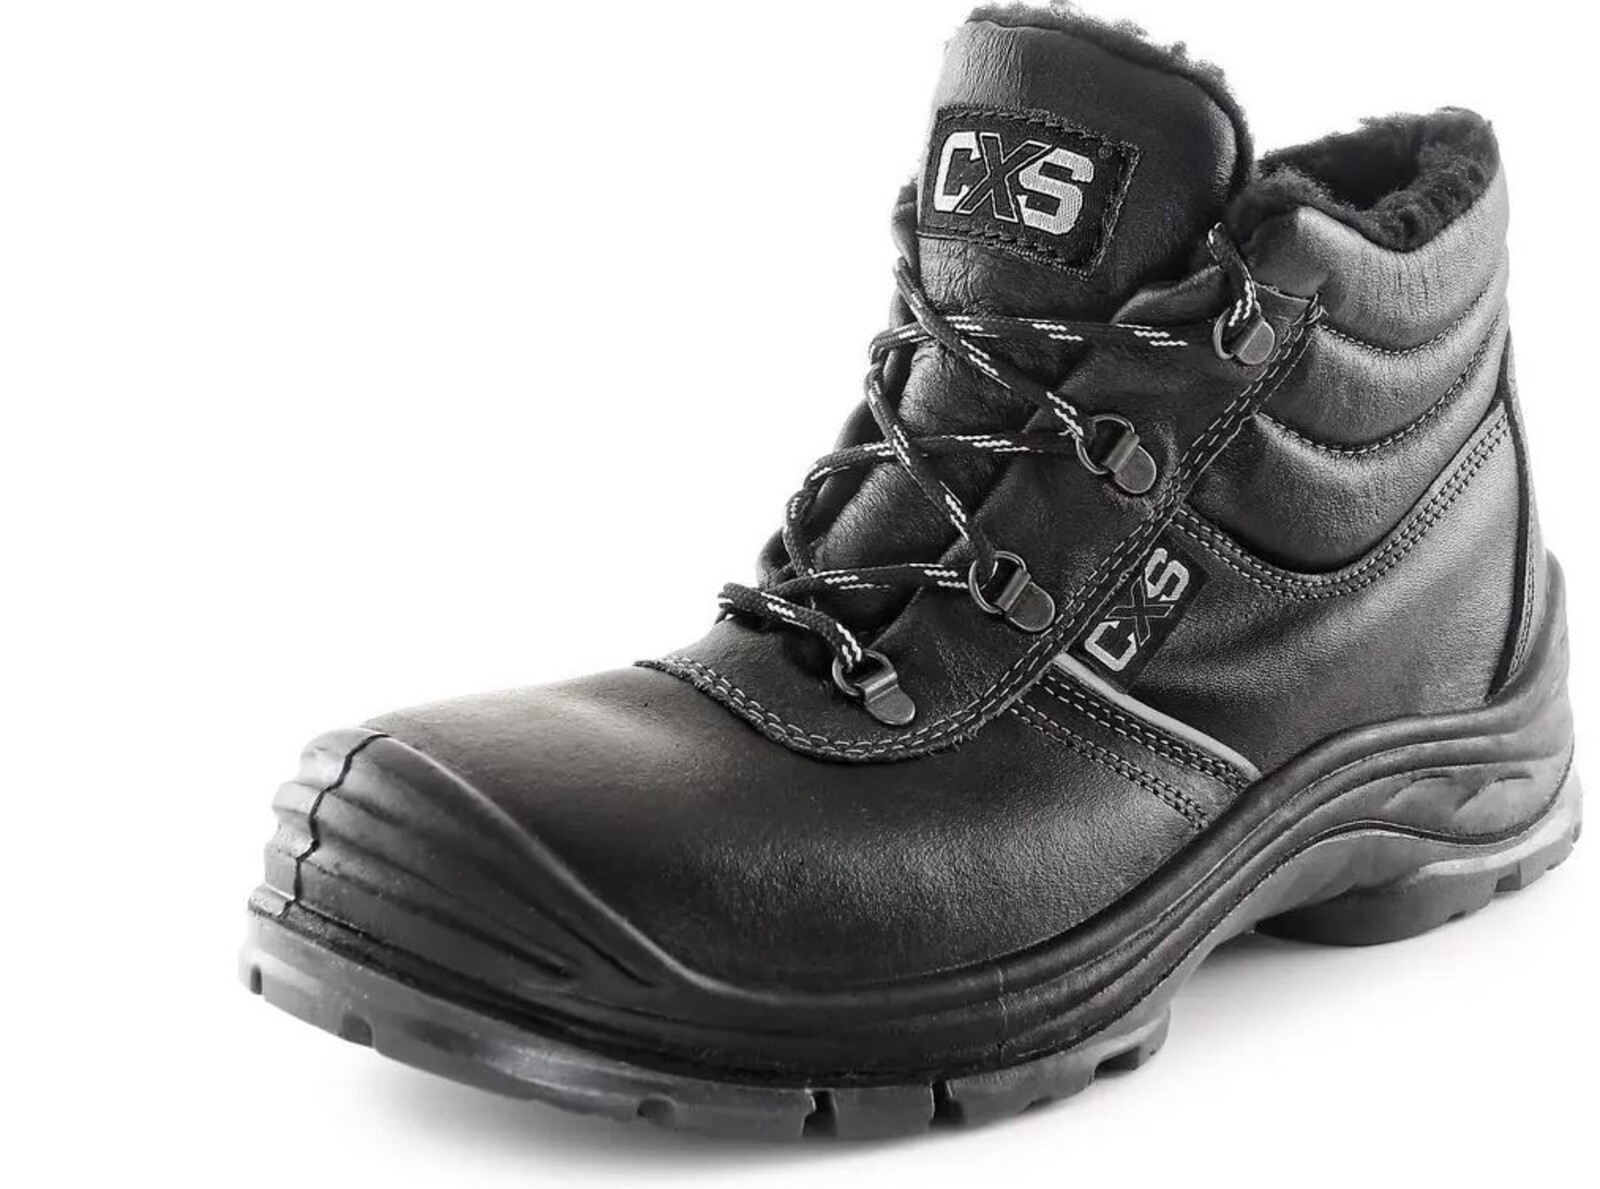 Zimná bezpečnostná členková obuv CXS Safety Steel Nickel S3 - veľkosť: 42, farba: čierna